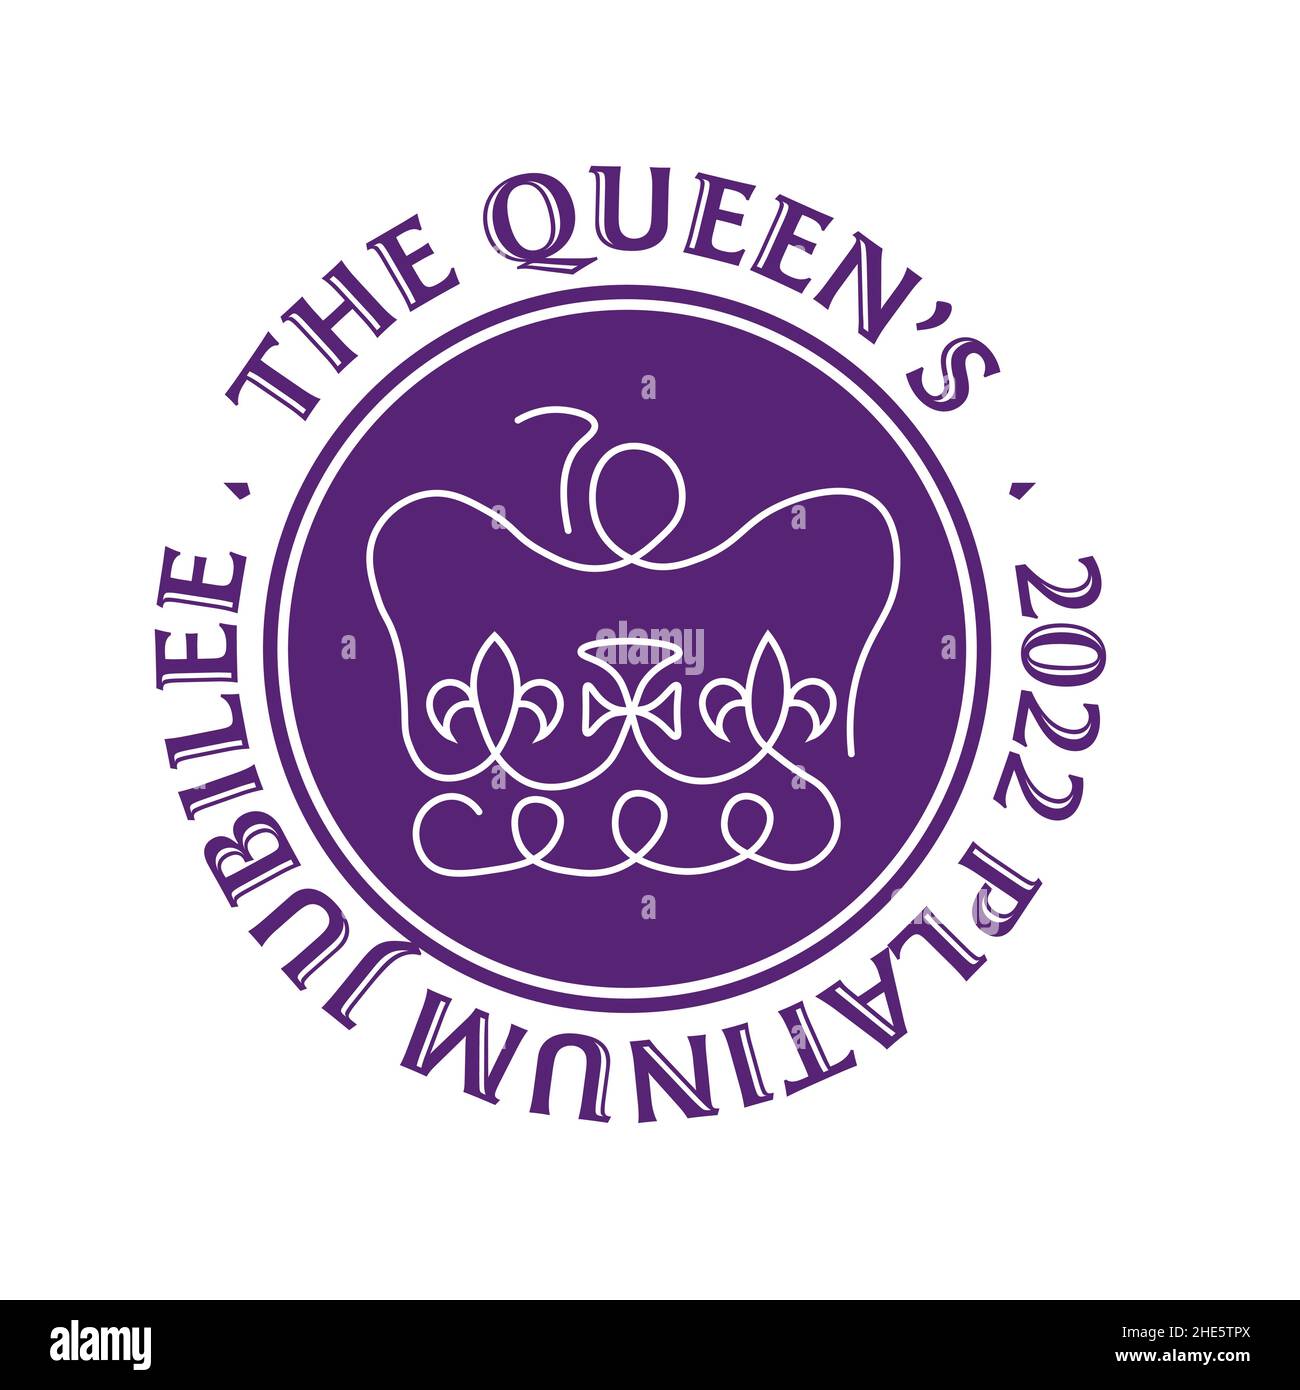 The Queens Platinum Jubilee 2022 - im Jahr 2022 wird Ihre Majestät die Königin der erste britische Monarch, der nach 70 Jahren ein Platinum Jubilee feiert Stock Vektor